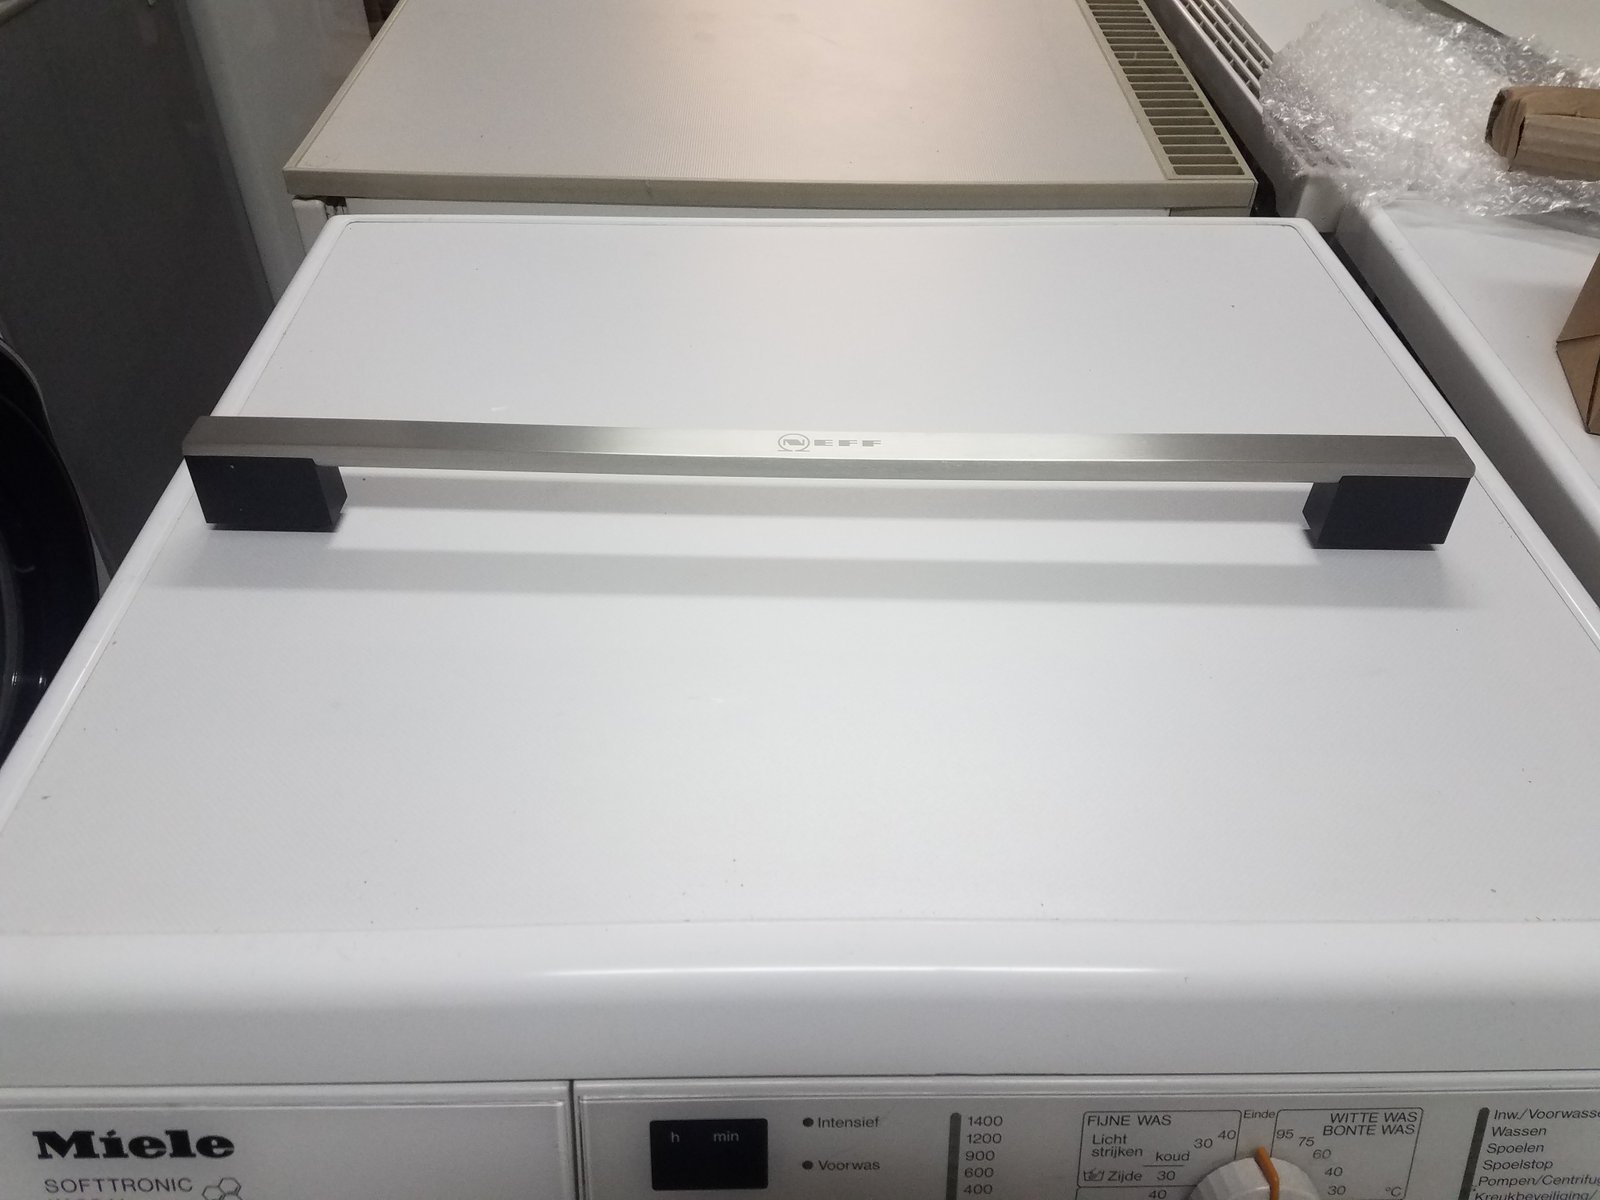 Oven NEFF,BOSCH/SIEMENS door handle Handles and door handles for electric and gas stove ovens